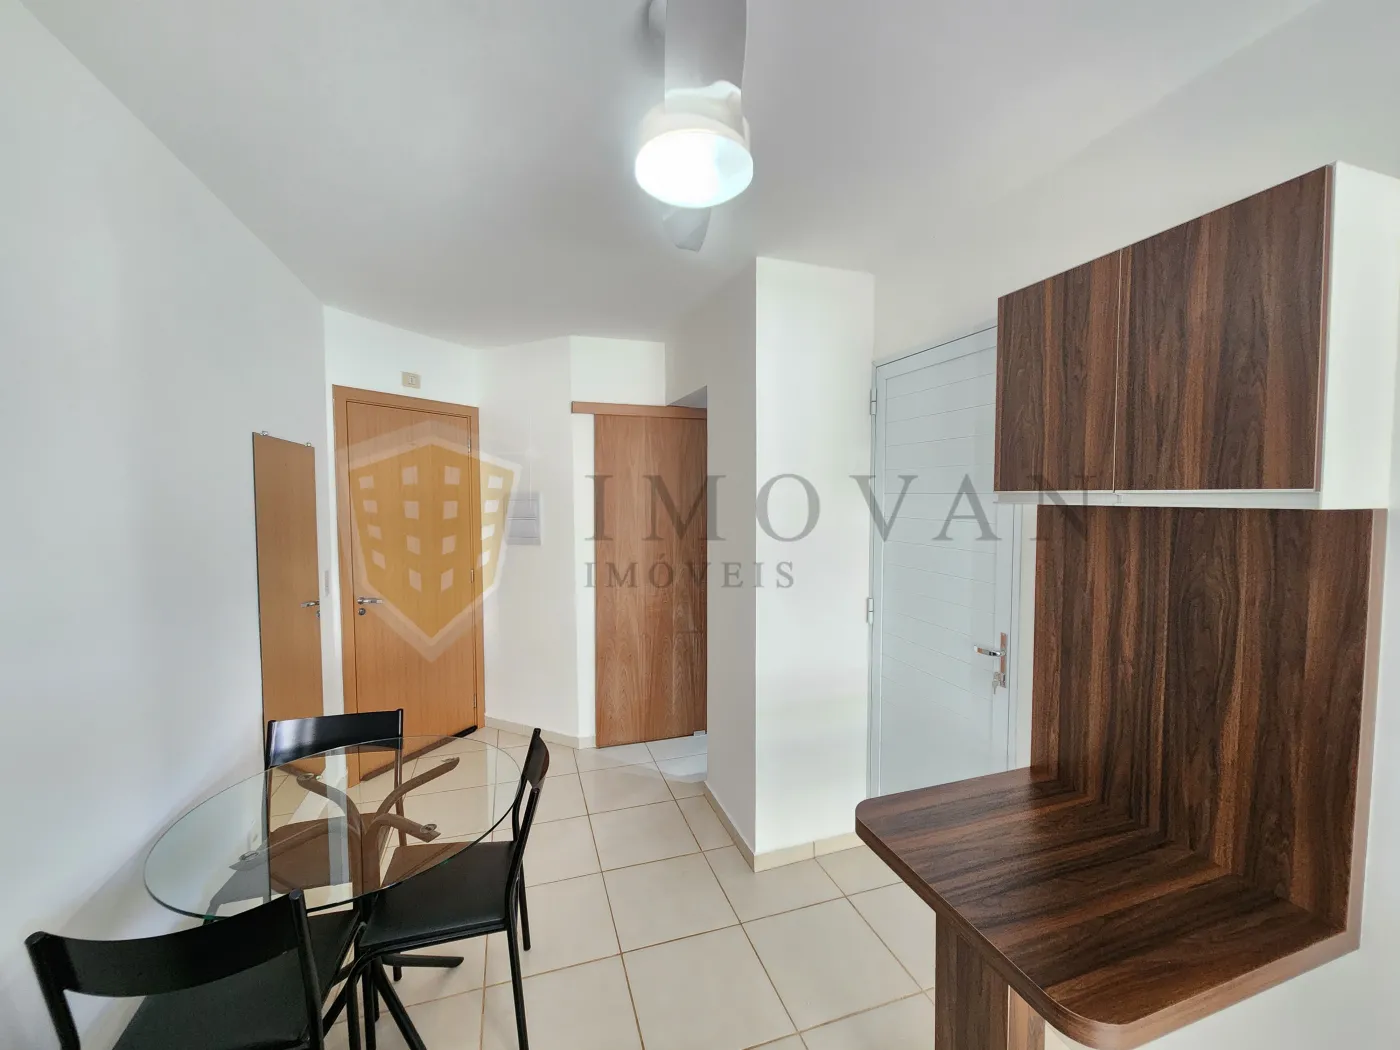 Alugar Apartamento / Padrão em Ribeirão Preto R$ 1.850,00 - Foto 6